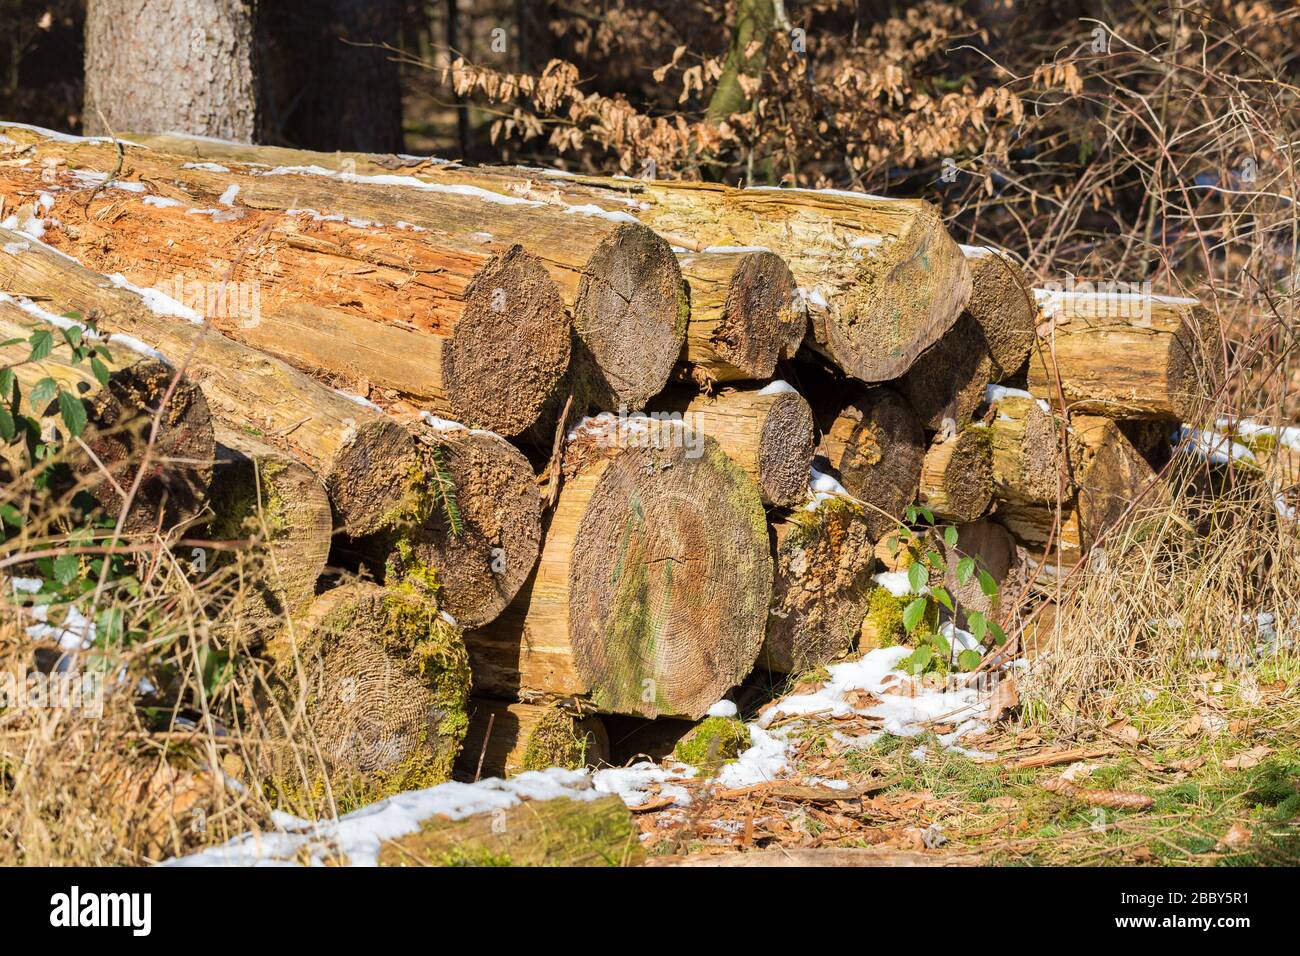 Holzstämme, teilweise verrottet und mit Moos bedeckt. In einem bayerischen Wald. Dazwischen Schnee. Symbol für Forstwirtschaft, Holzschnitt, Abholzung. Stockfoto